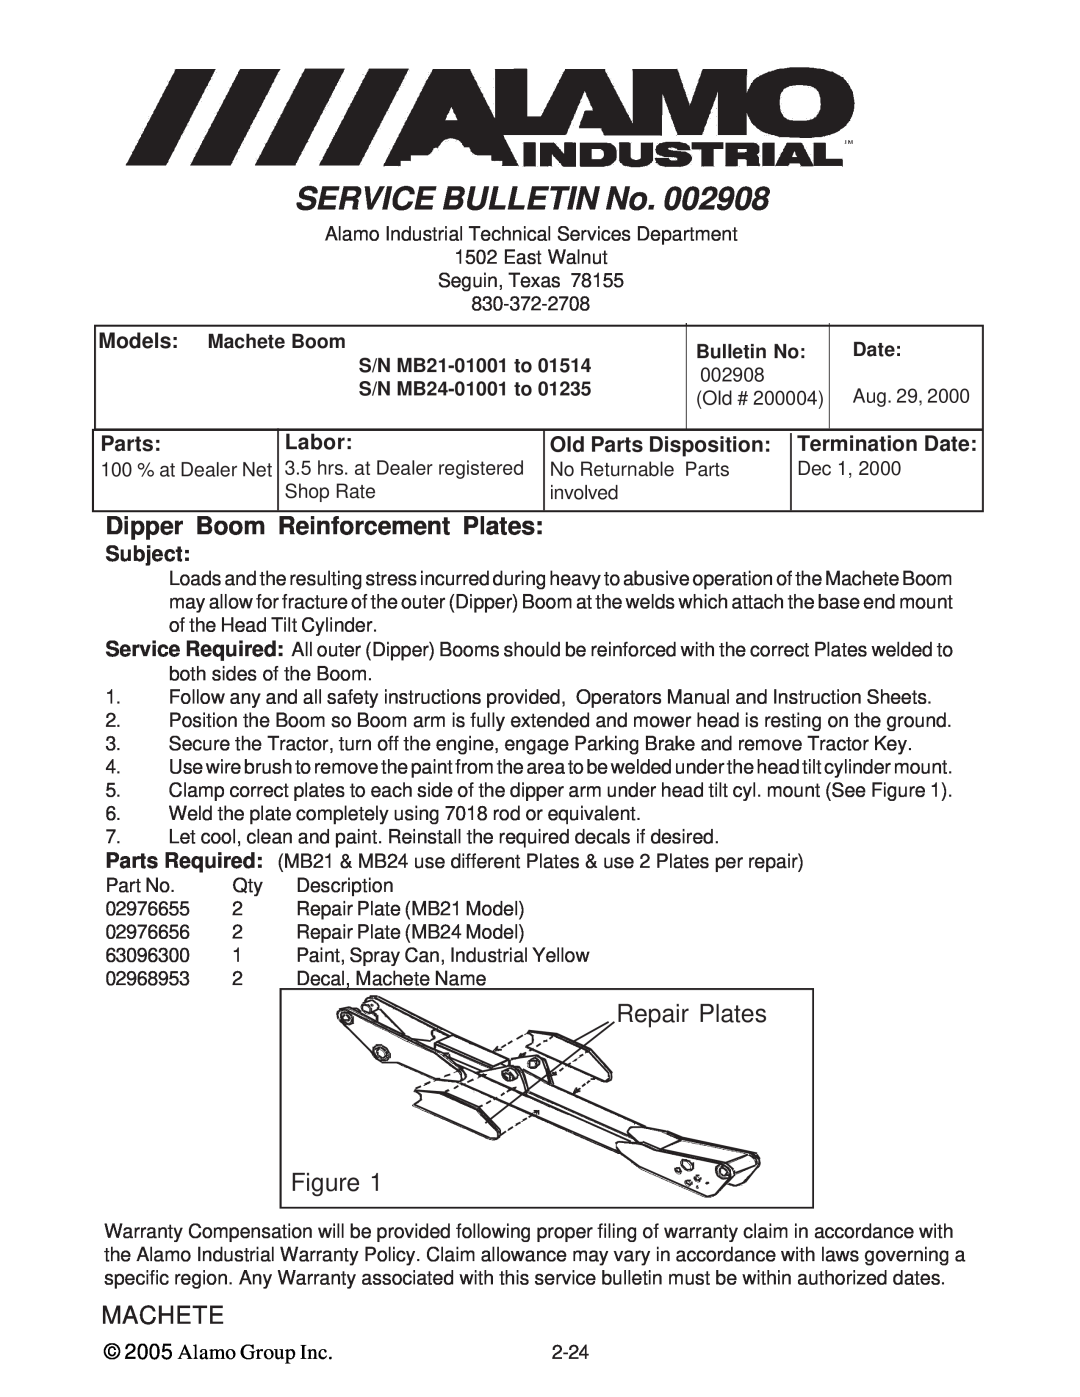 Alamo T 7740 Dipper Boom Reinforcement Plates, Repair Plates, 002908, Aug. 29, No Returnable Parts, Dec 1, Shop Rate, Date 